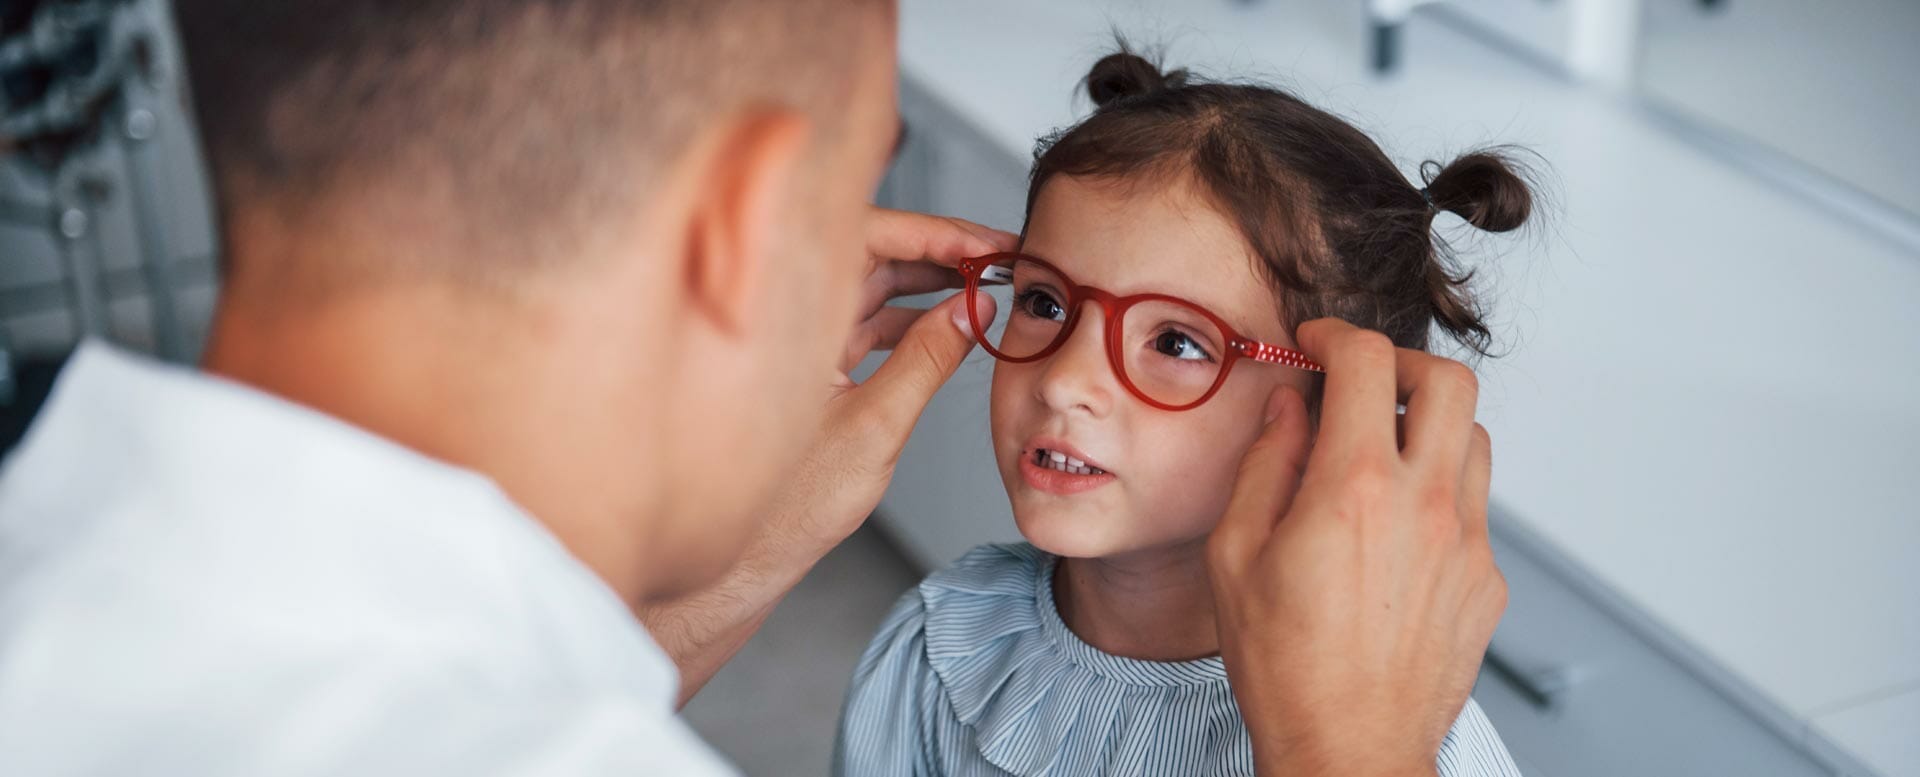 Kurzsichtigkeit - Kind probiert eine Brille